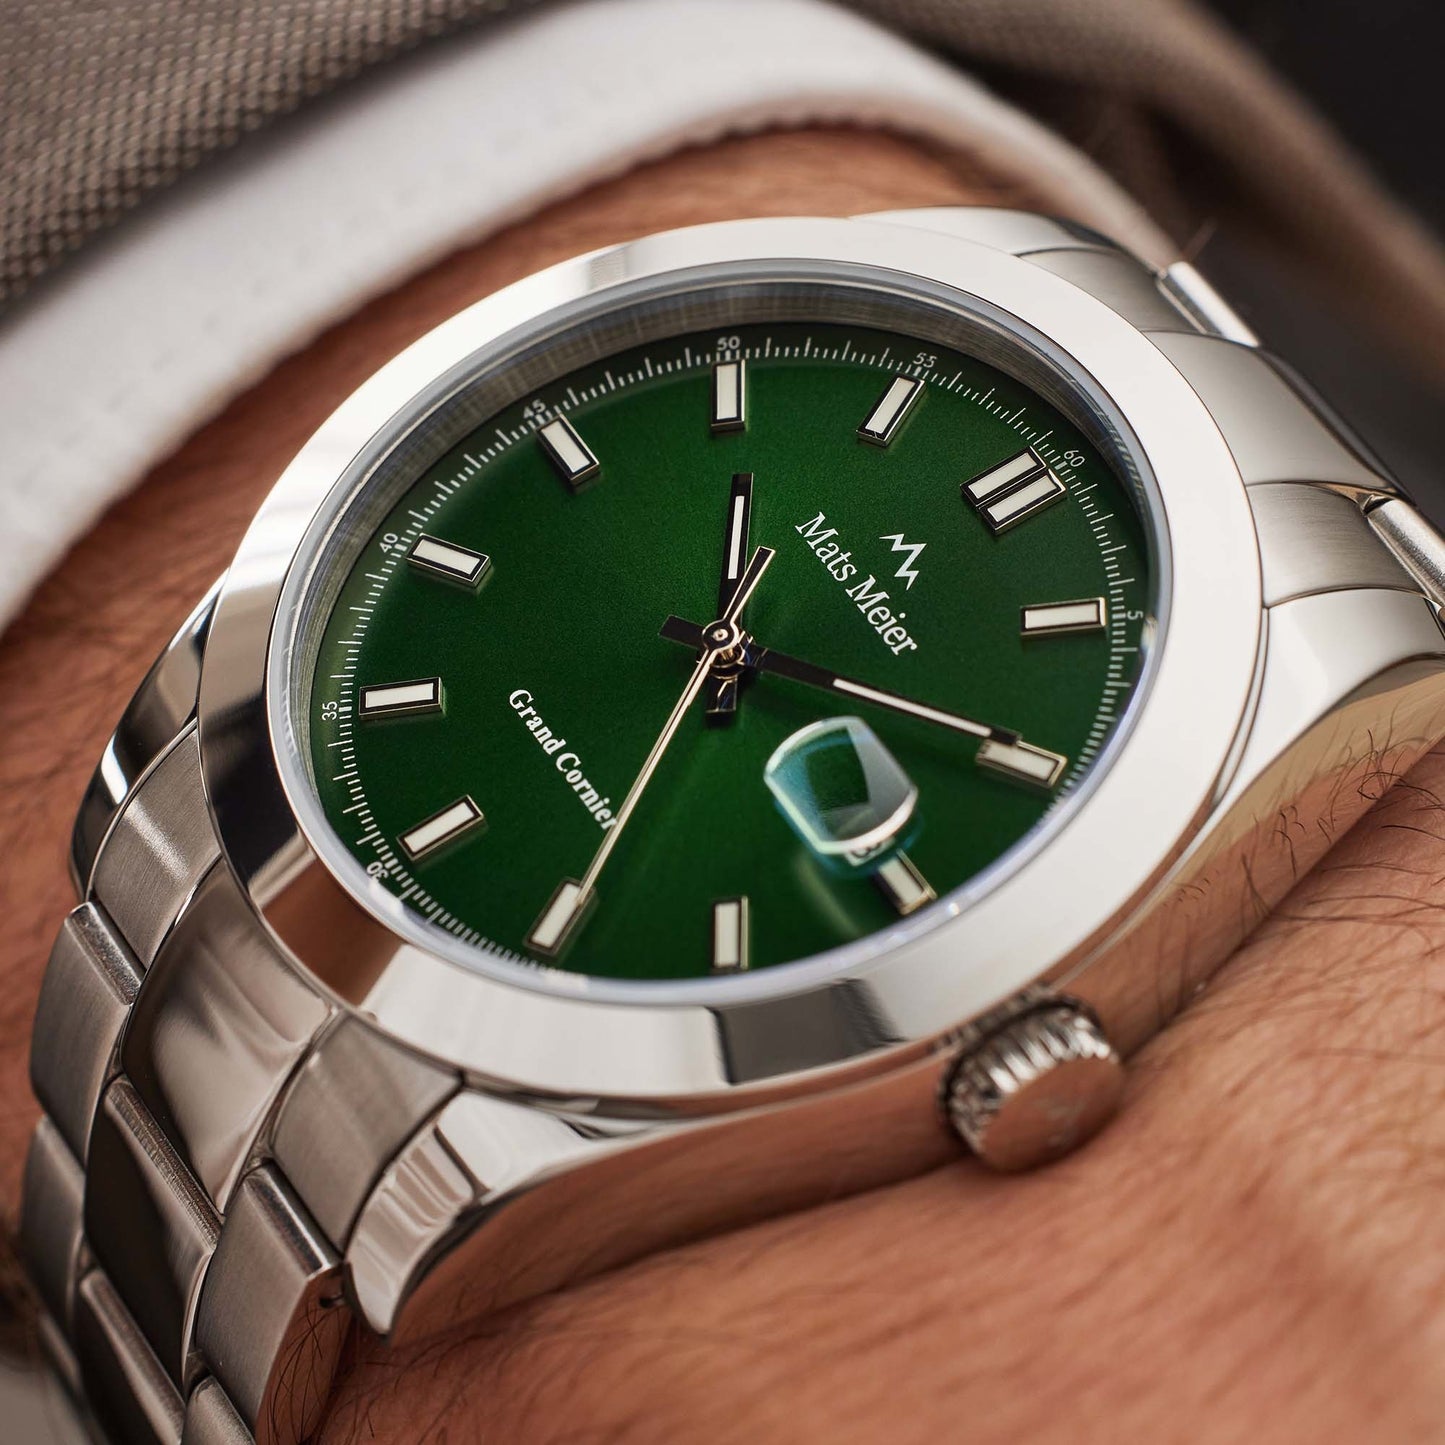 Grand Cornier montre pour homme couleur argent et vert